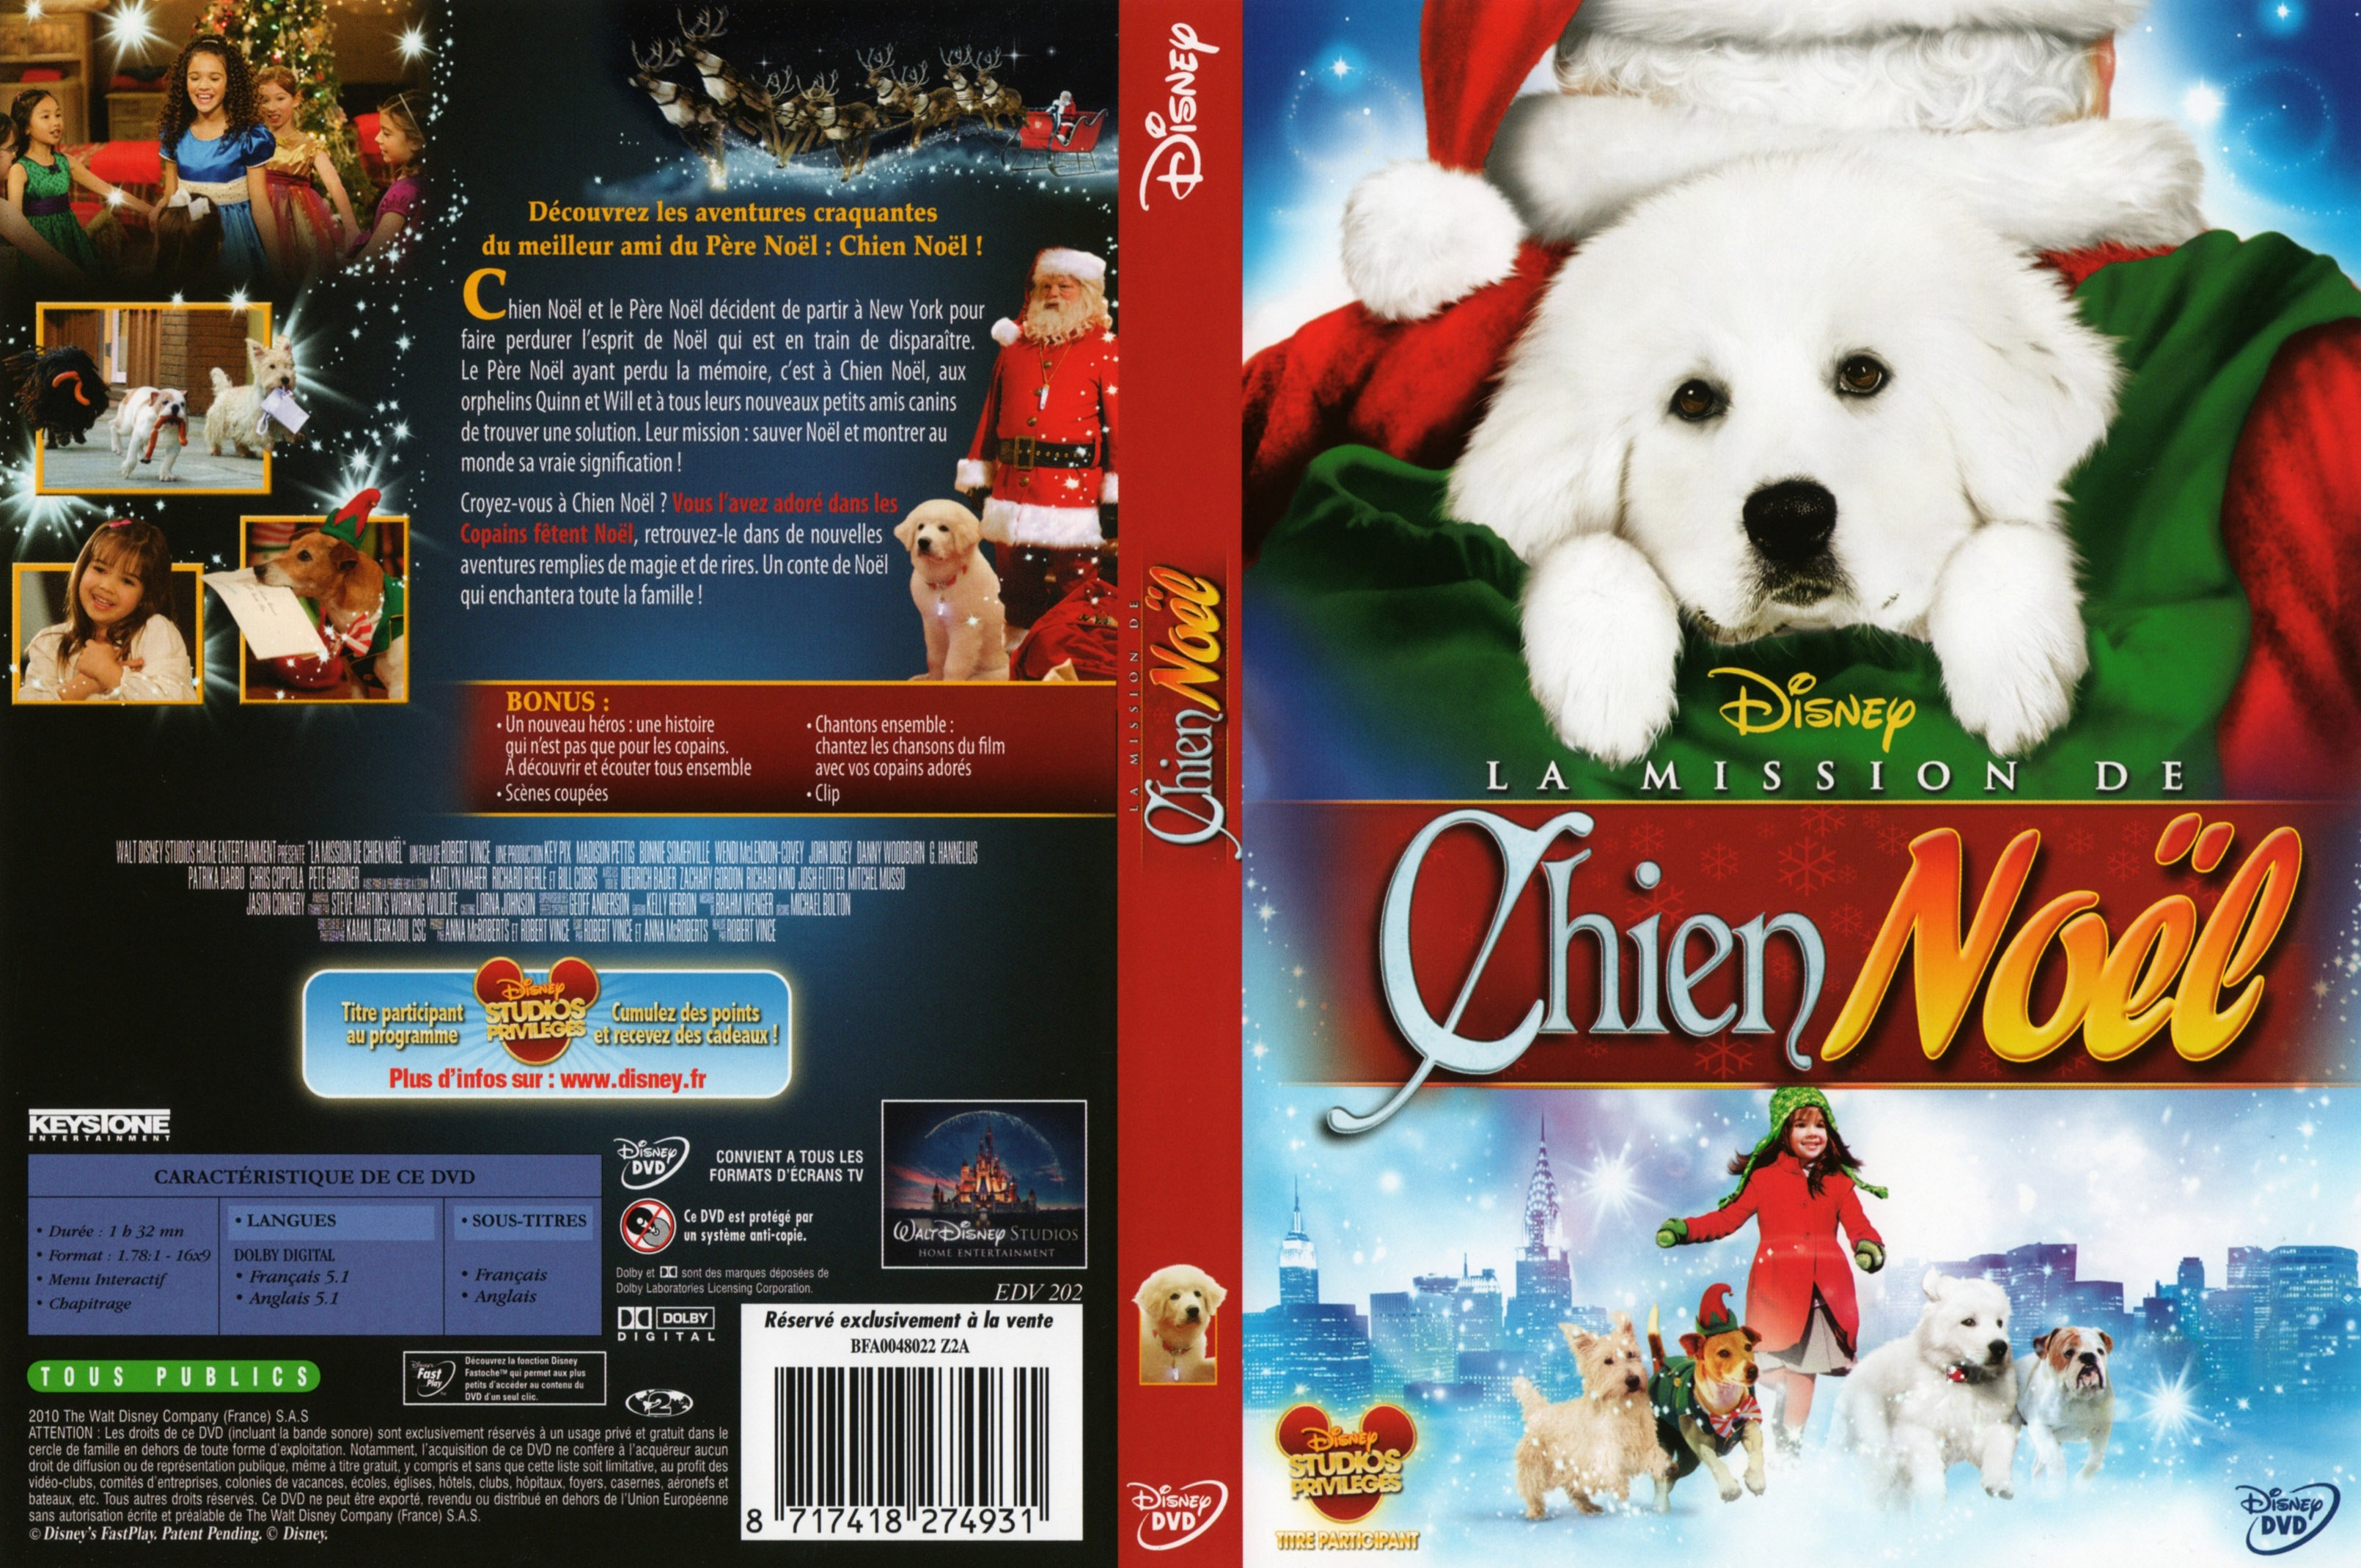 Jaquette DVD La mission de chien Noel